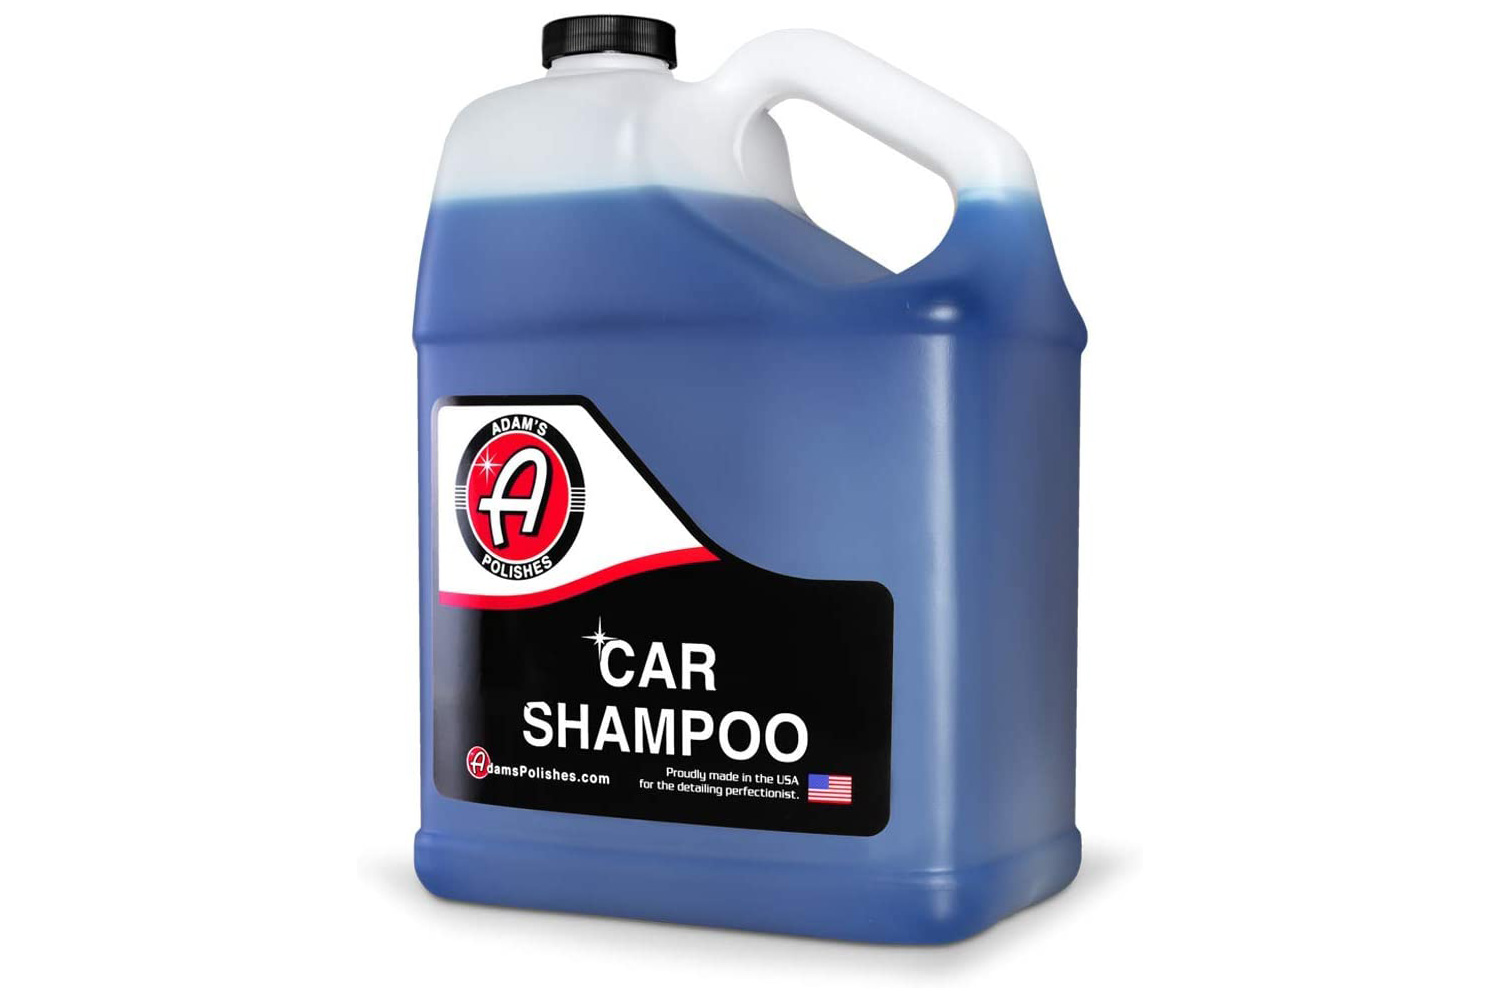 Adams Polishes Car Shampoo 16 OZS